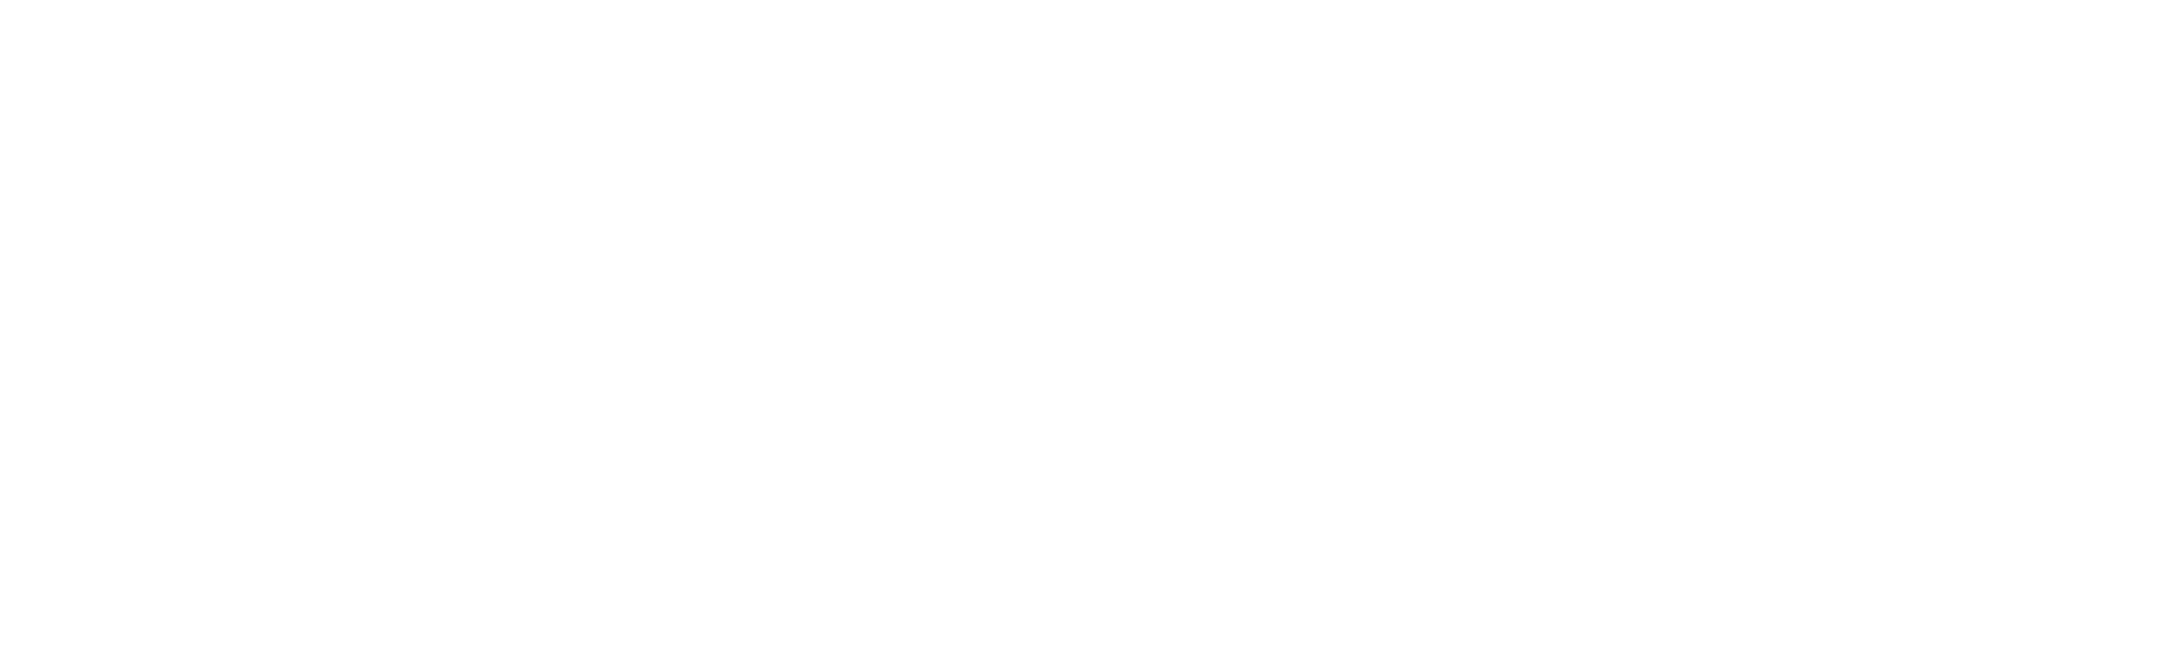 Smart True Studio